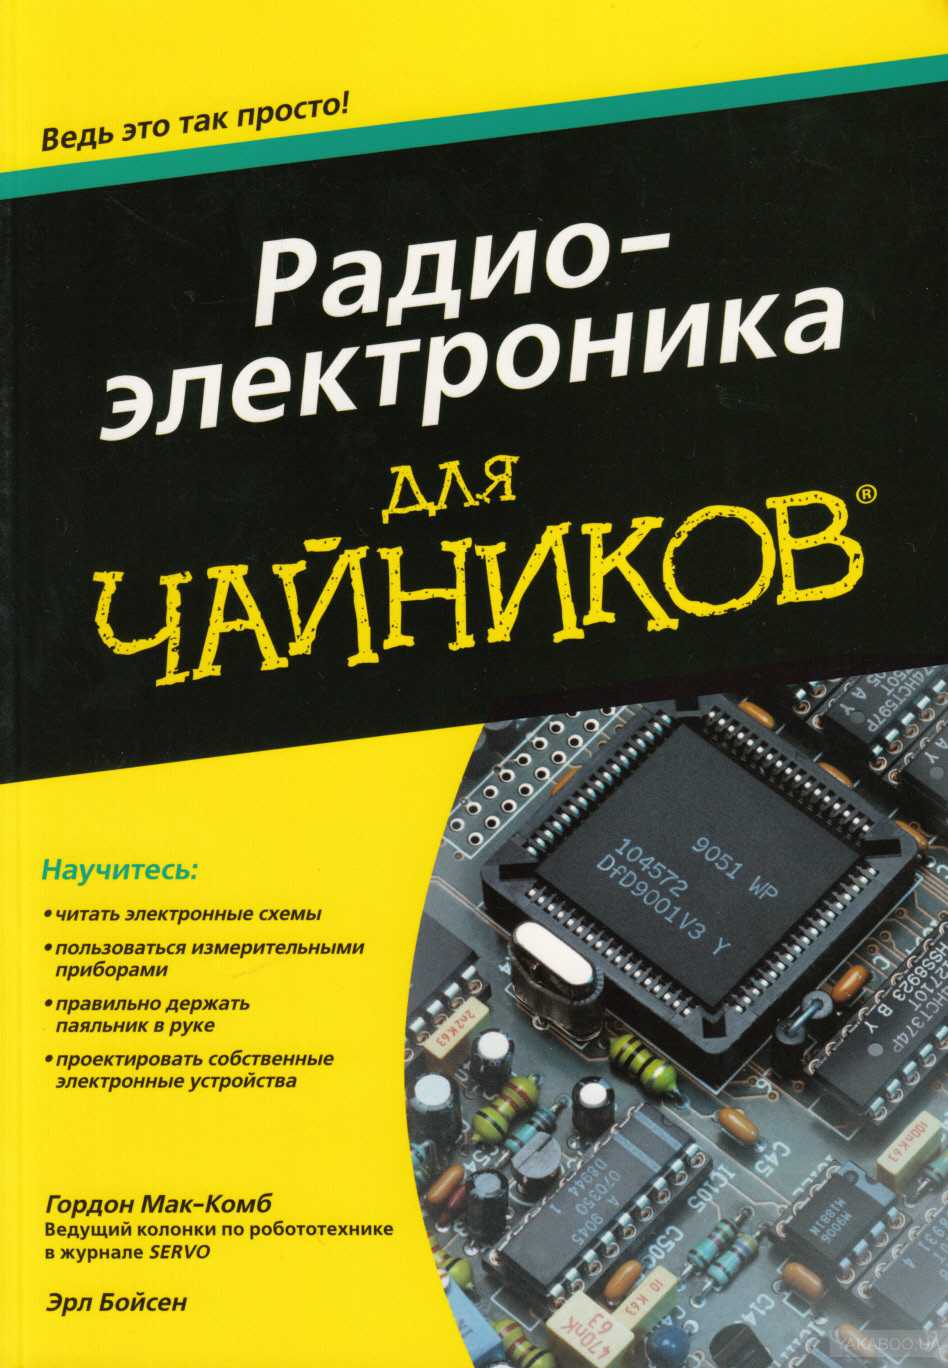 Учебная литература по радиотехнике, радиоэлектронике, электронике, автоматике, электротехнике » страница 6